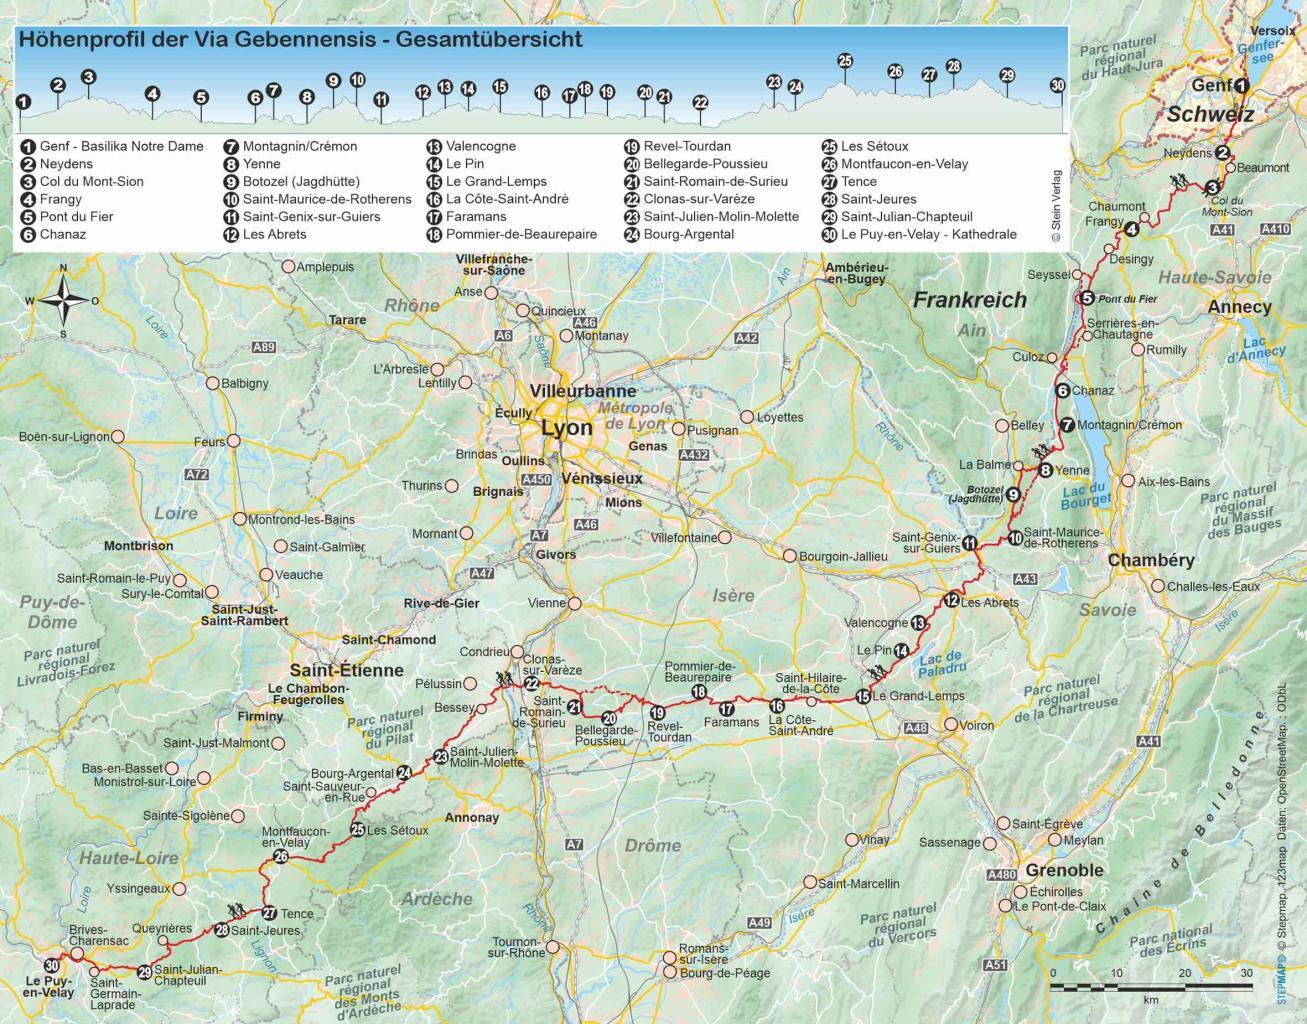 Wanderführer Frankreich: Jakobsweg Via Gebennensis - Fernwanderweg